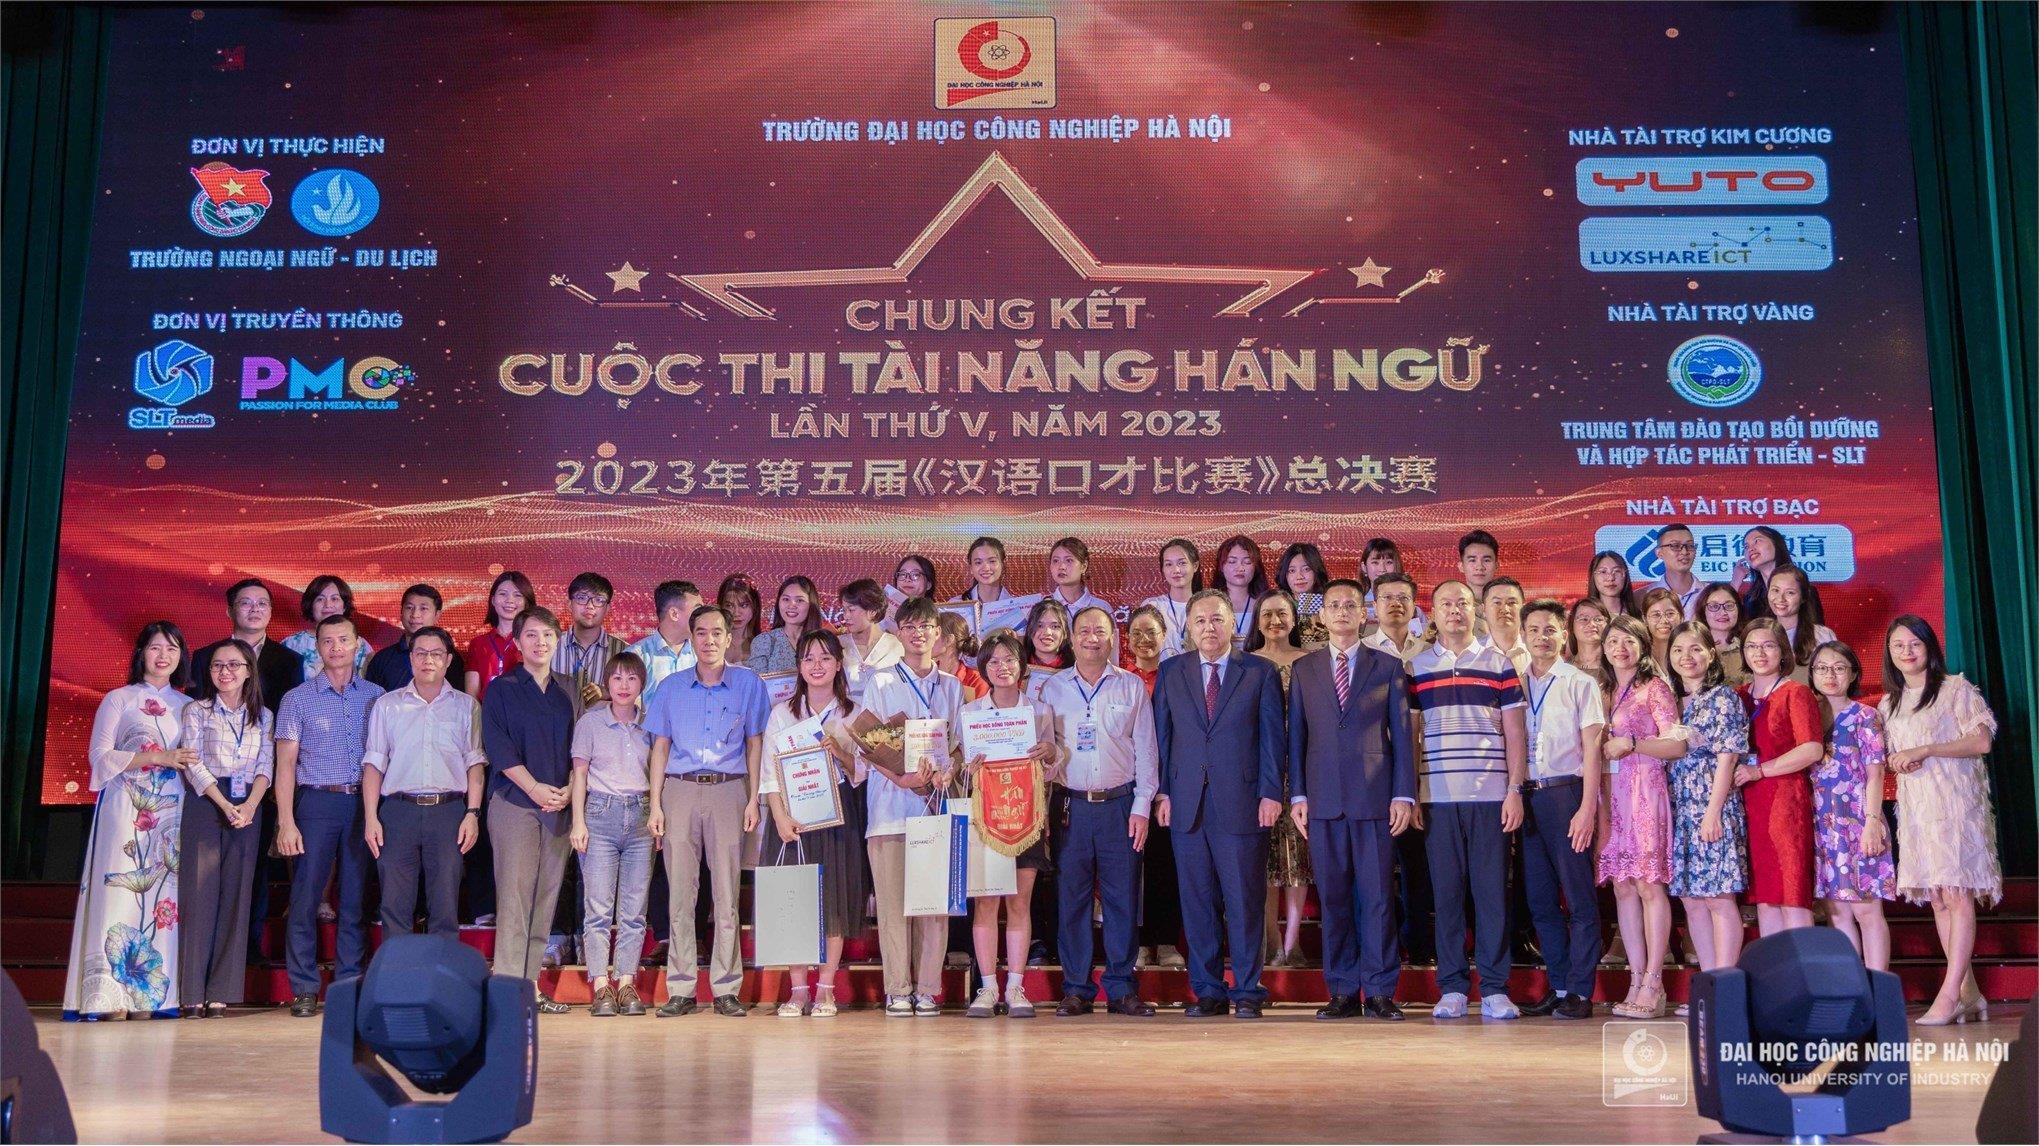 [daibieunhandan] Trường ĐH Công nghiệp Hà Nội đào tạo liên kết quốc tế 2+2 ngành Ngôn ngữ Trung Quốc